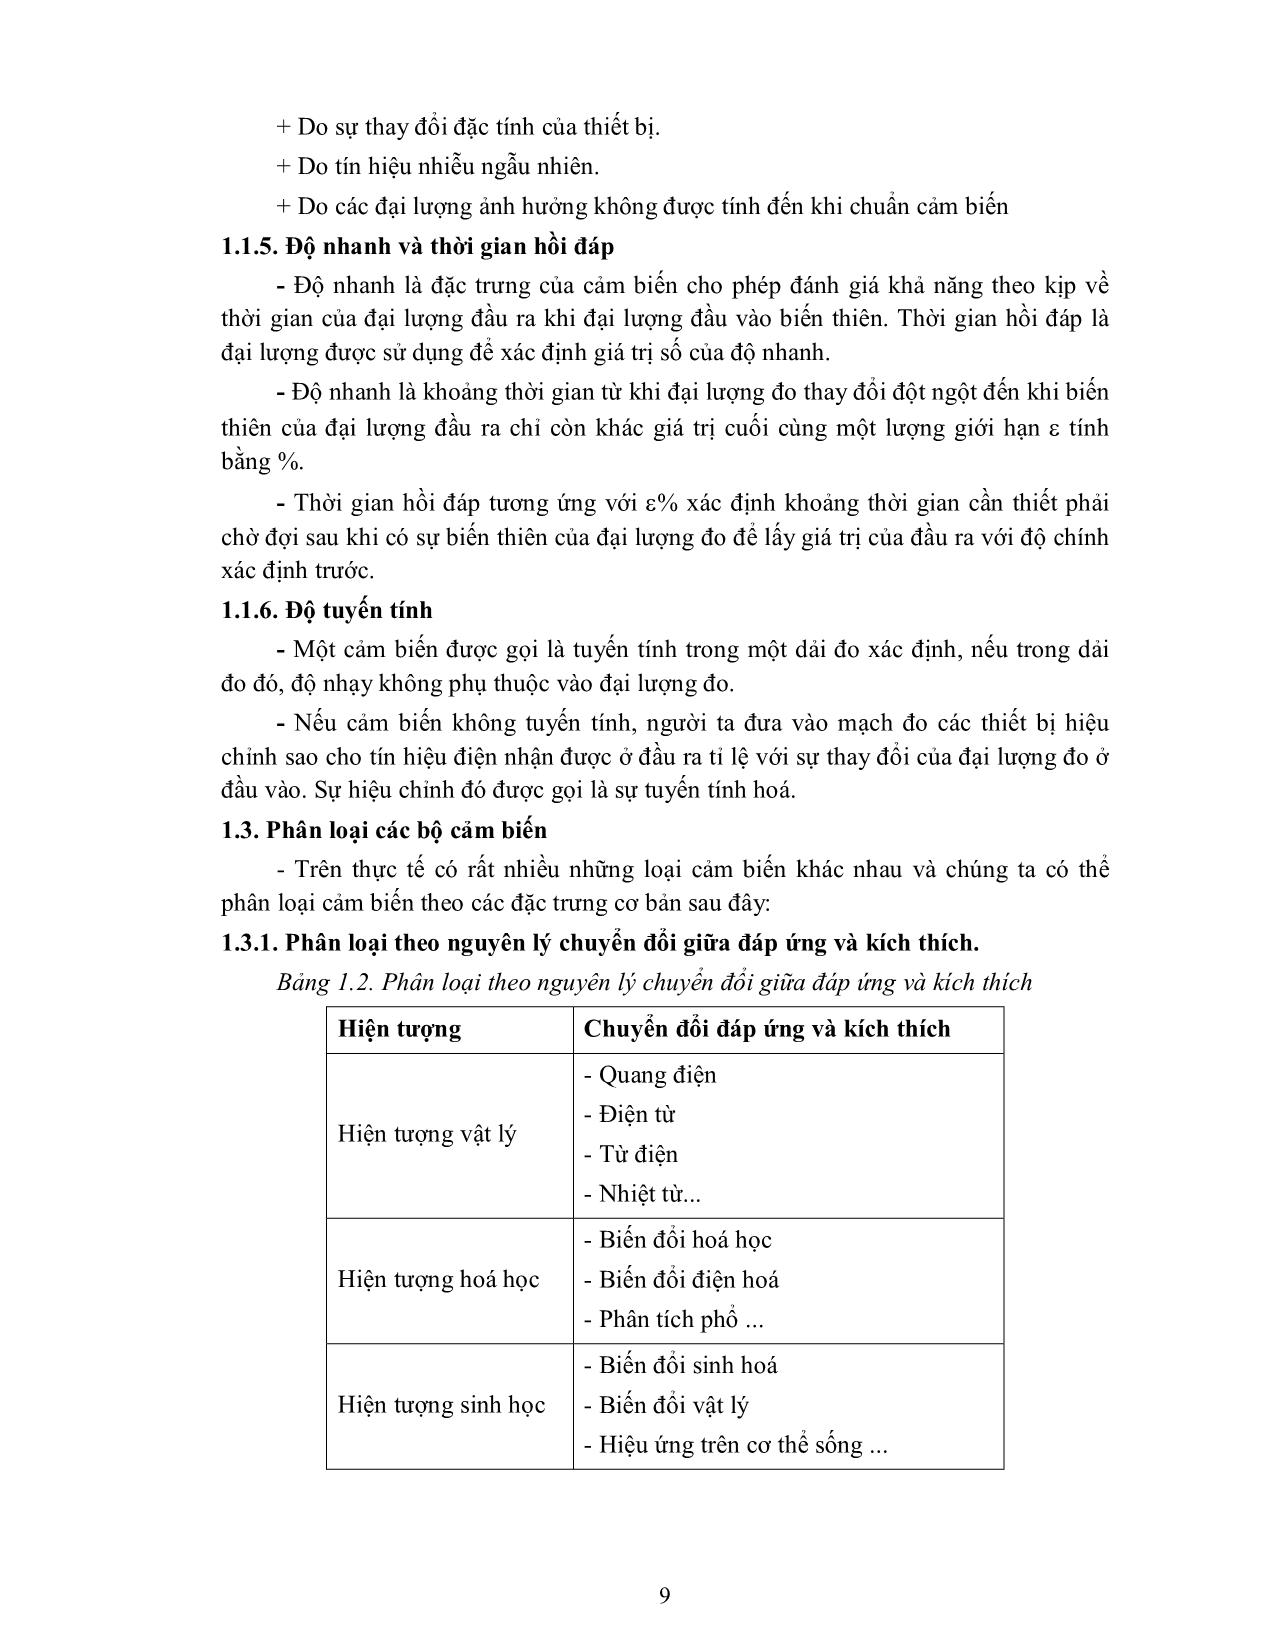 Bài giảng mô đun Điều khiển cảm biến trang 10